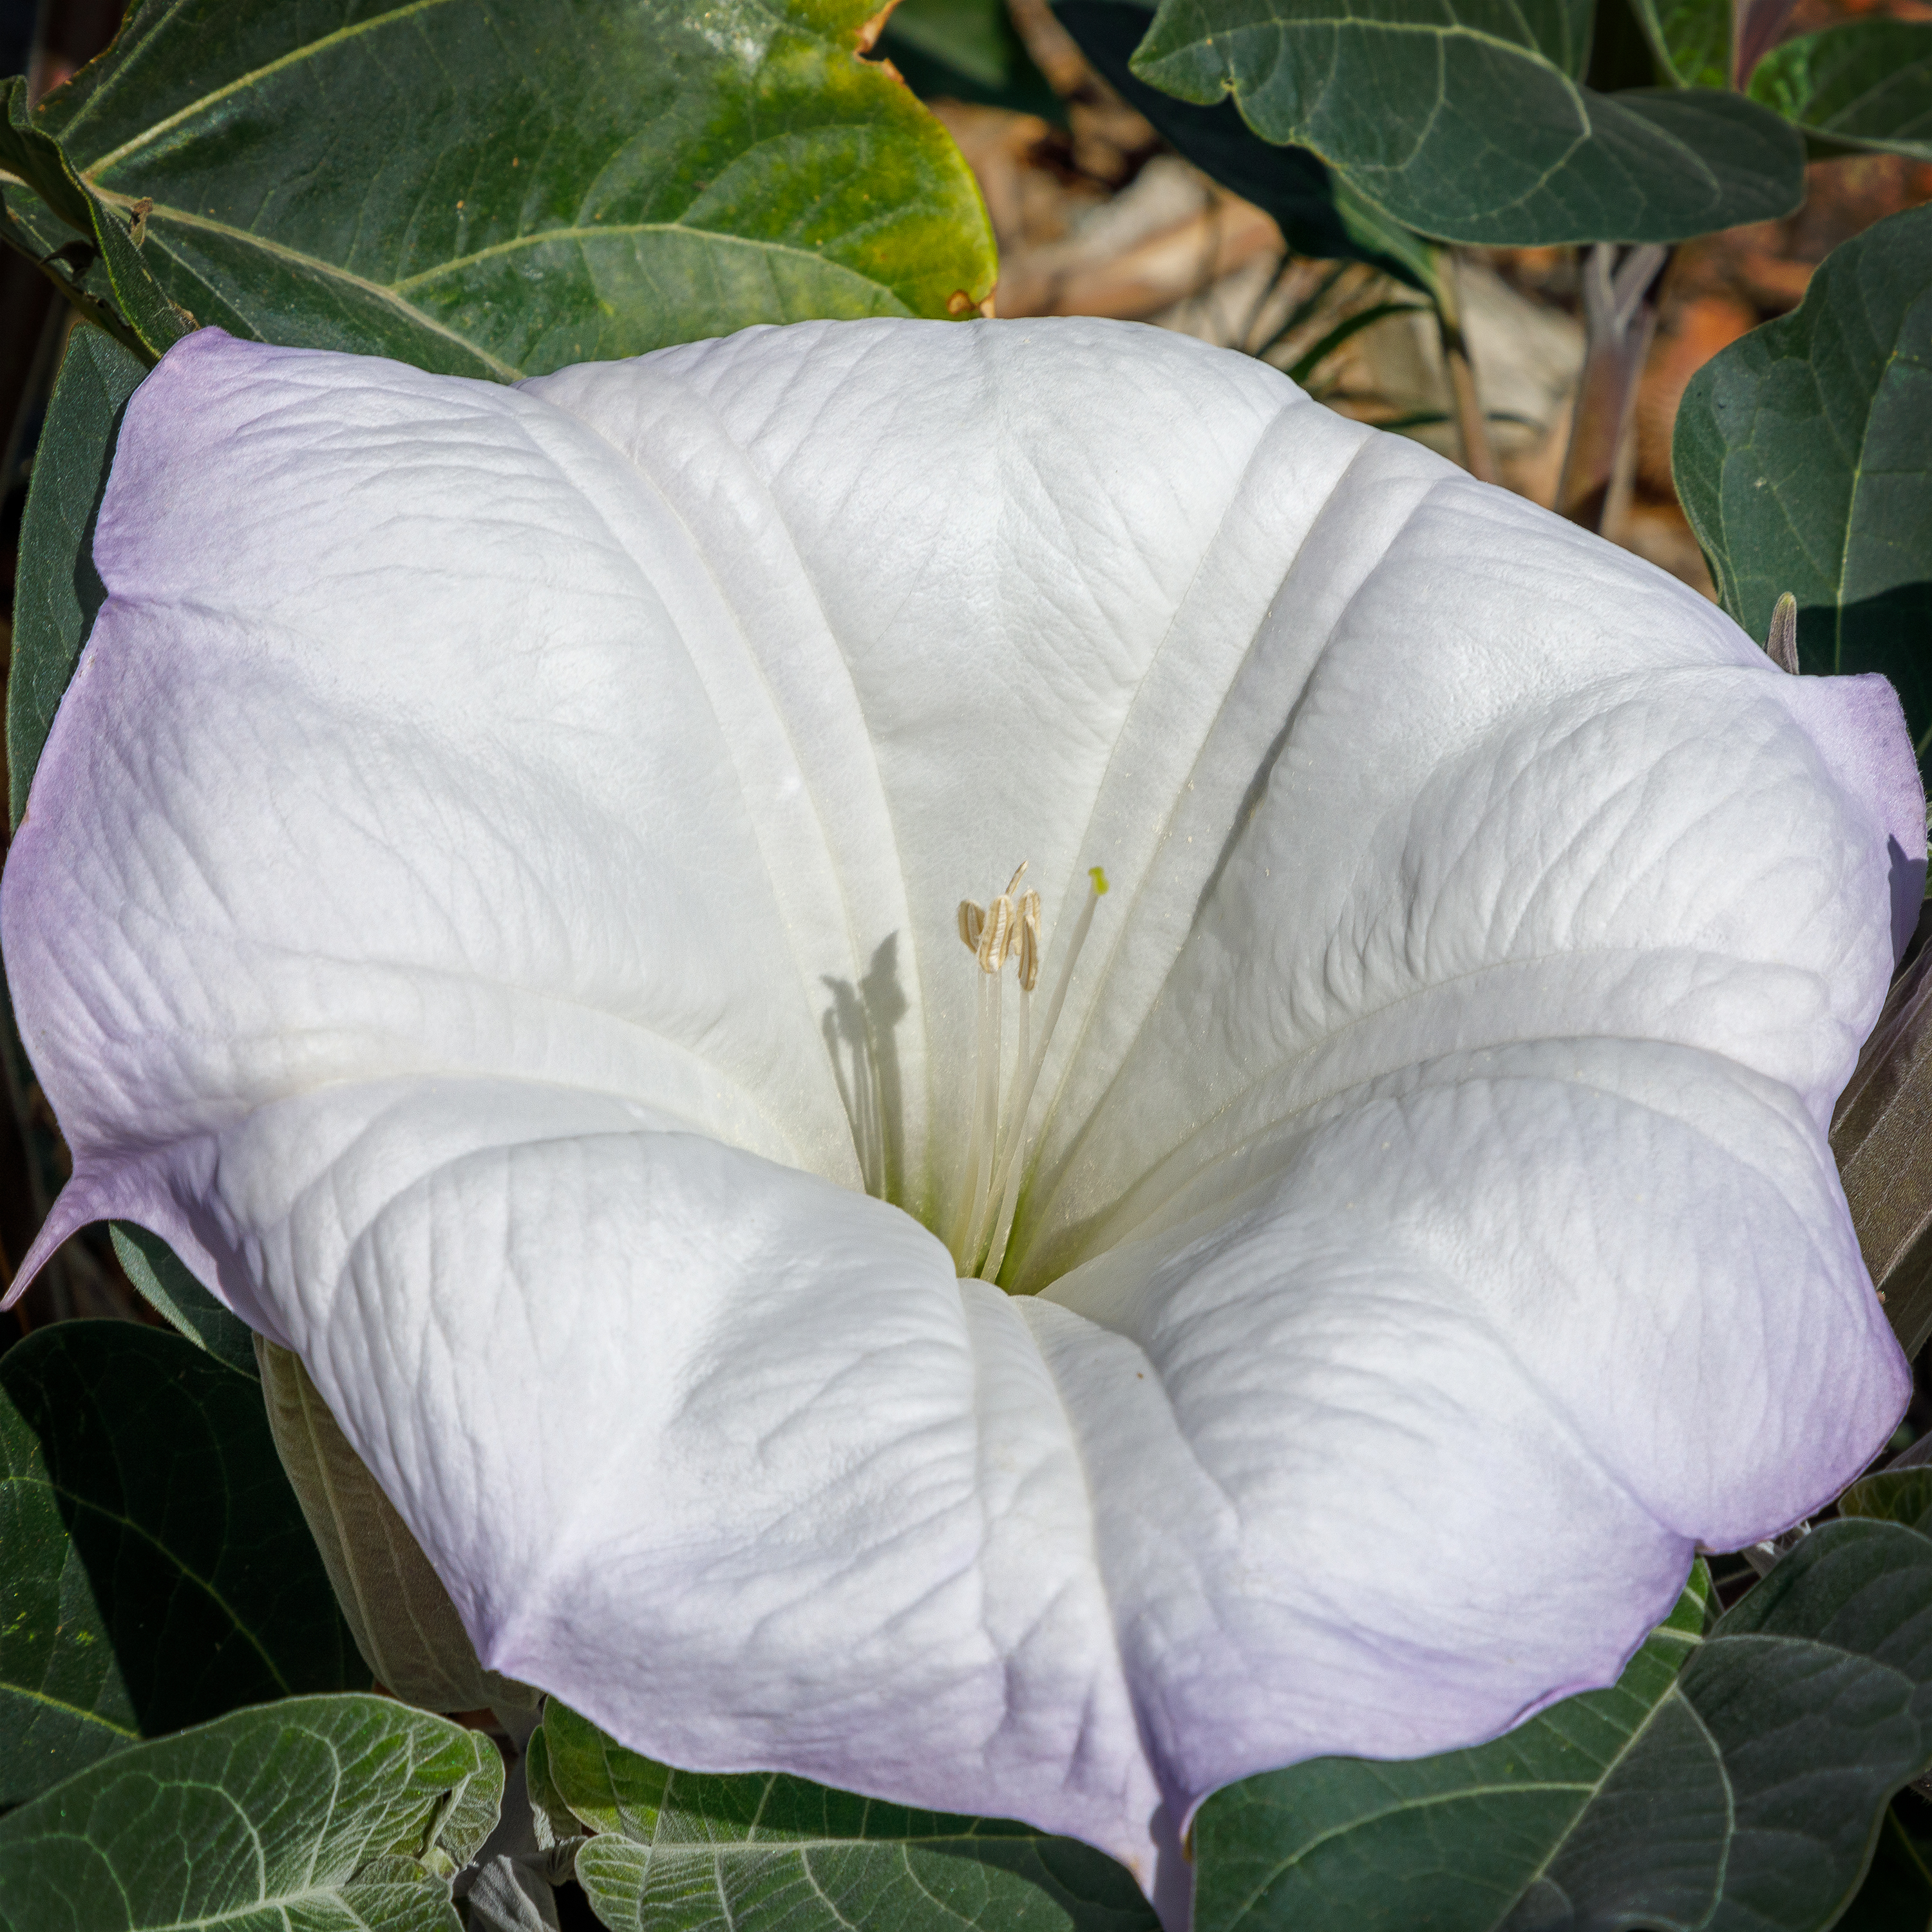 The white tubular flower of Sacred datura